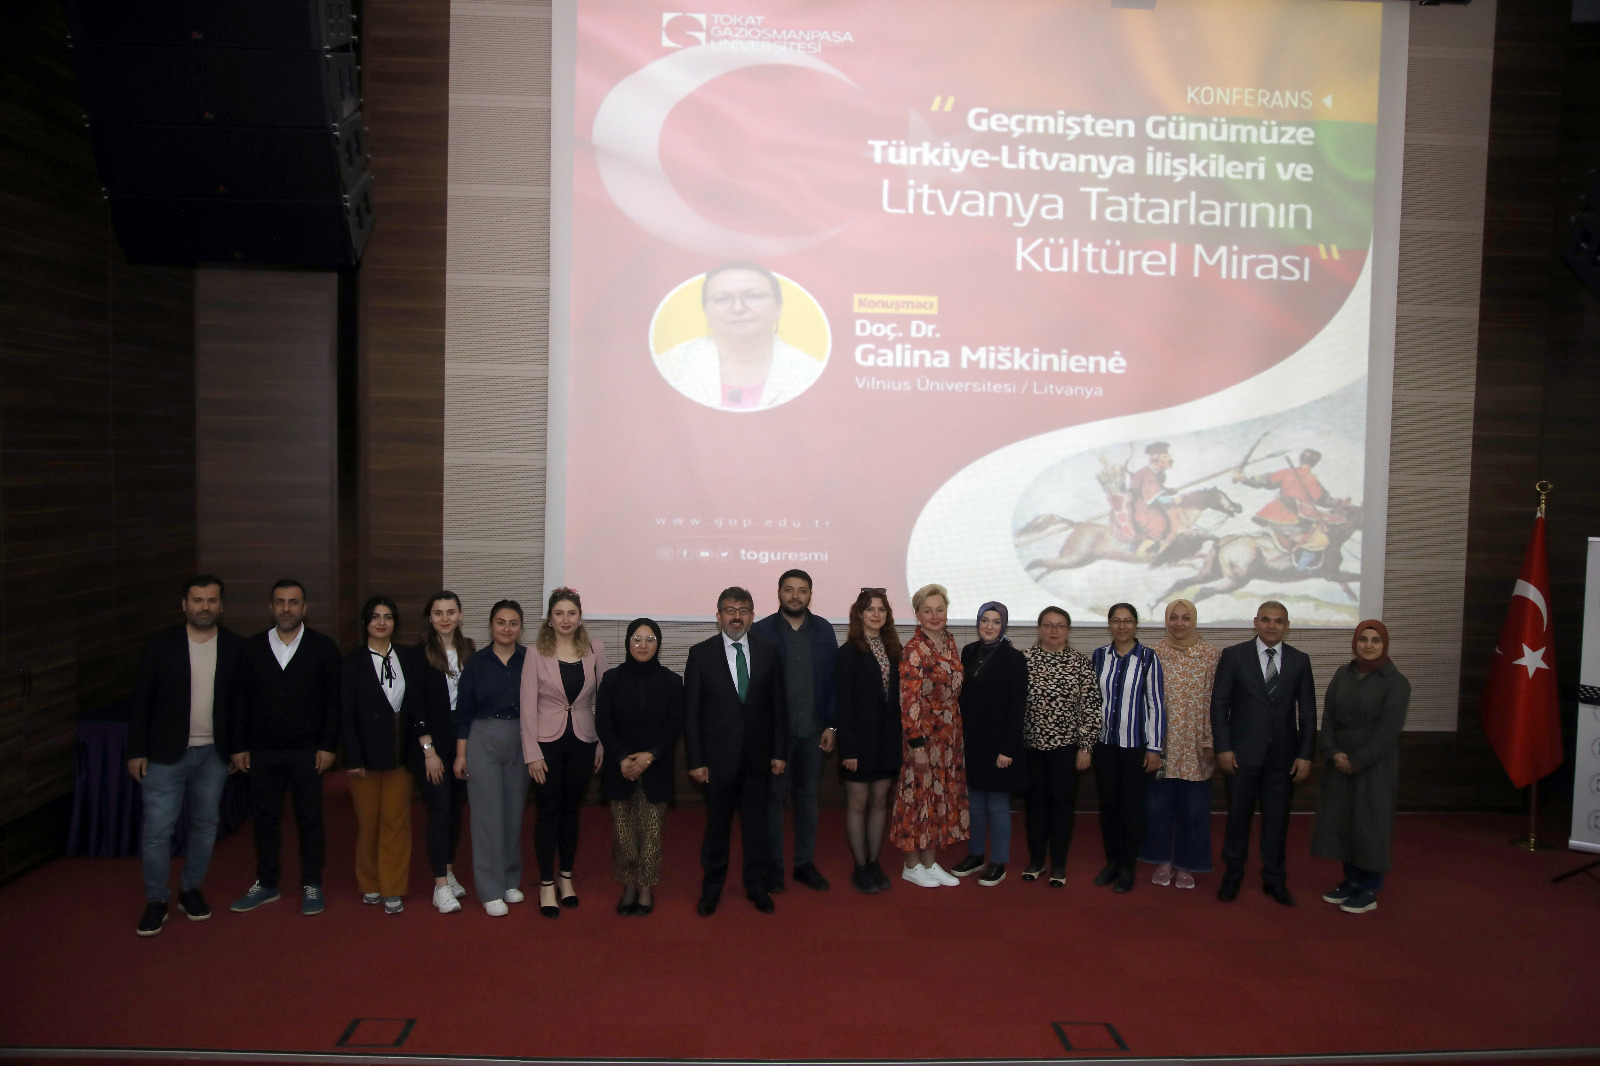 Türkiye Litvanya İlişkileri ve Litvanya Tatarlarının Kültürel Mirası Konferansı Gerçekleştirildi